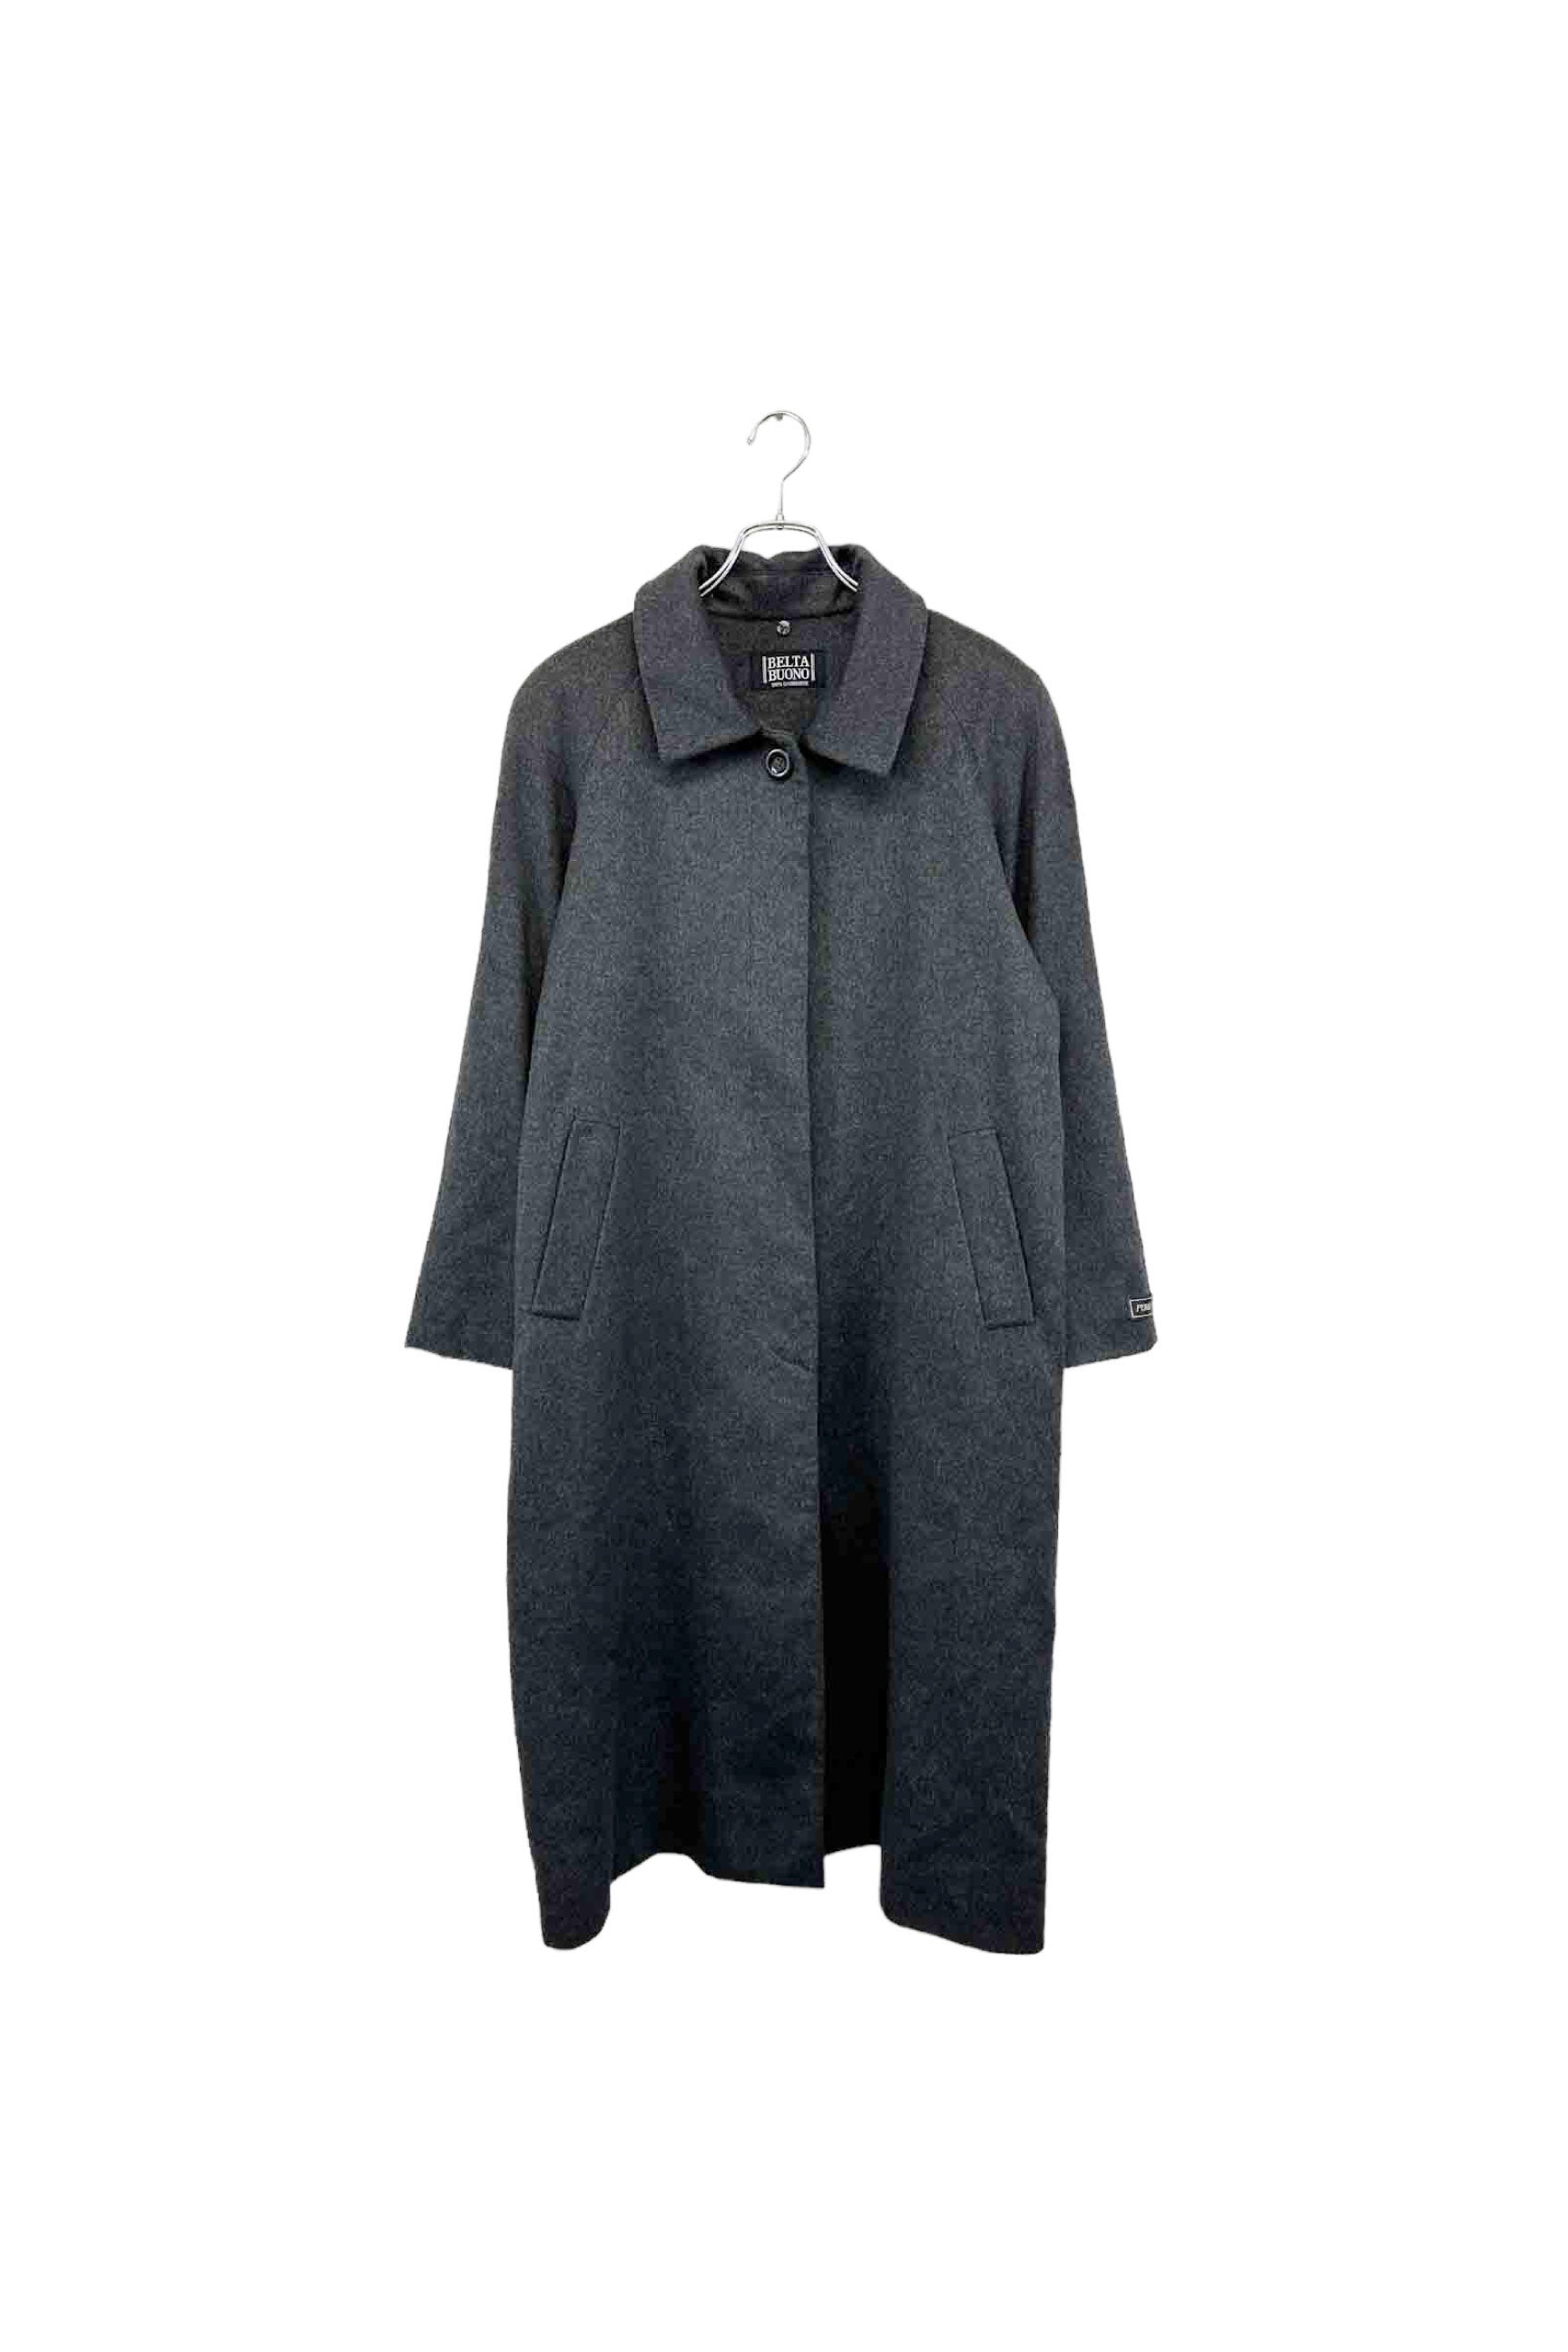 BELTA BUONO cashmere coat – ReSCOUNT STORE